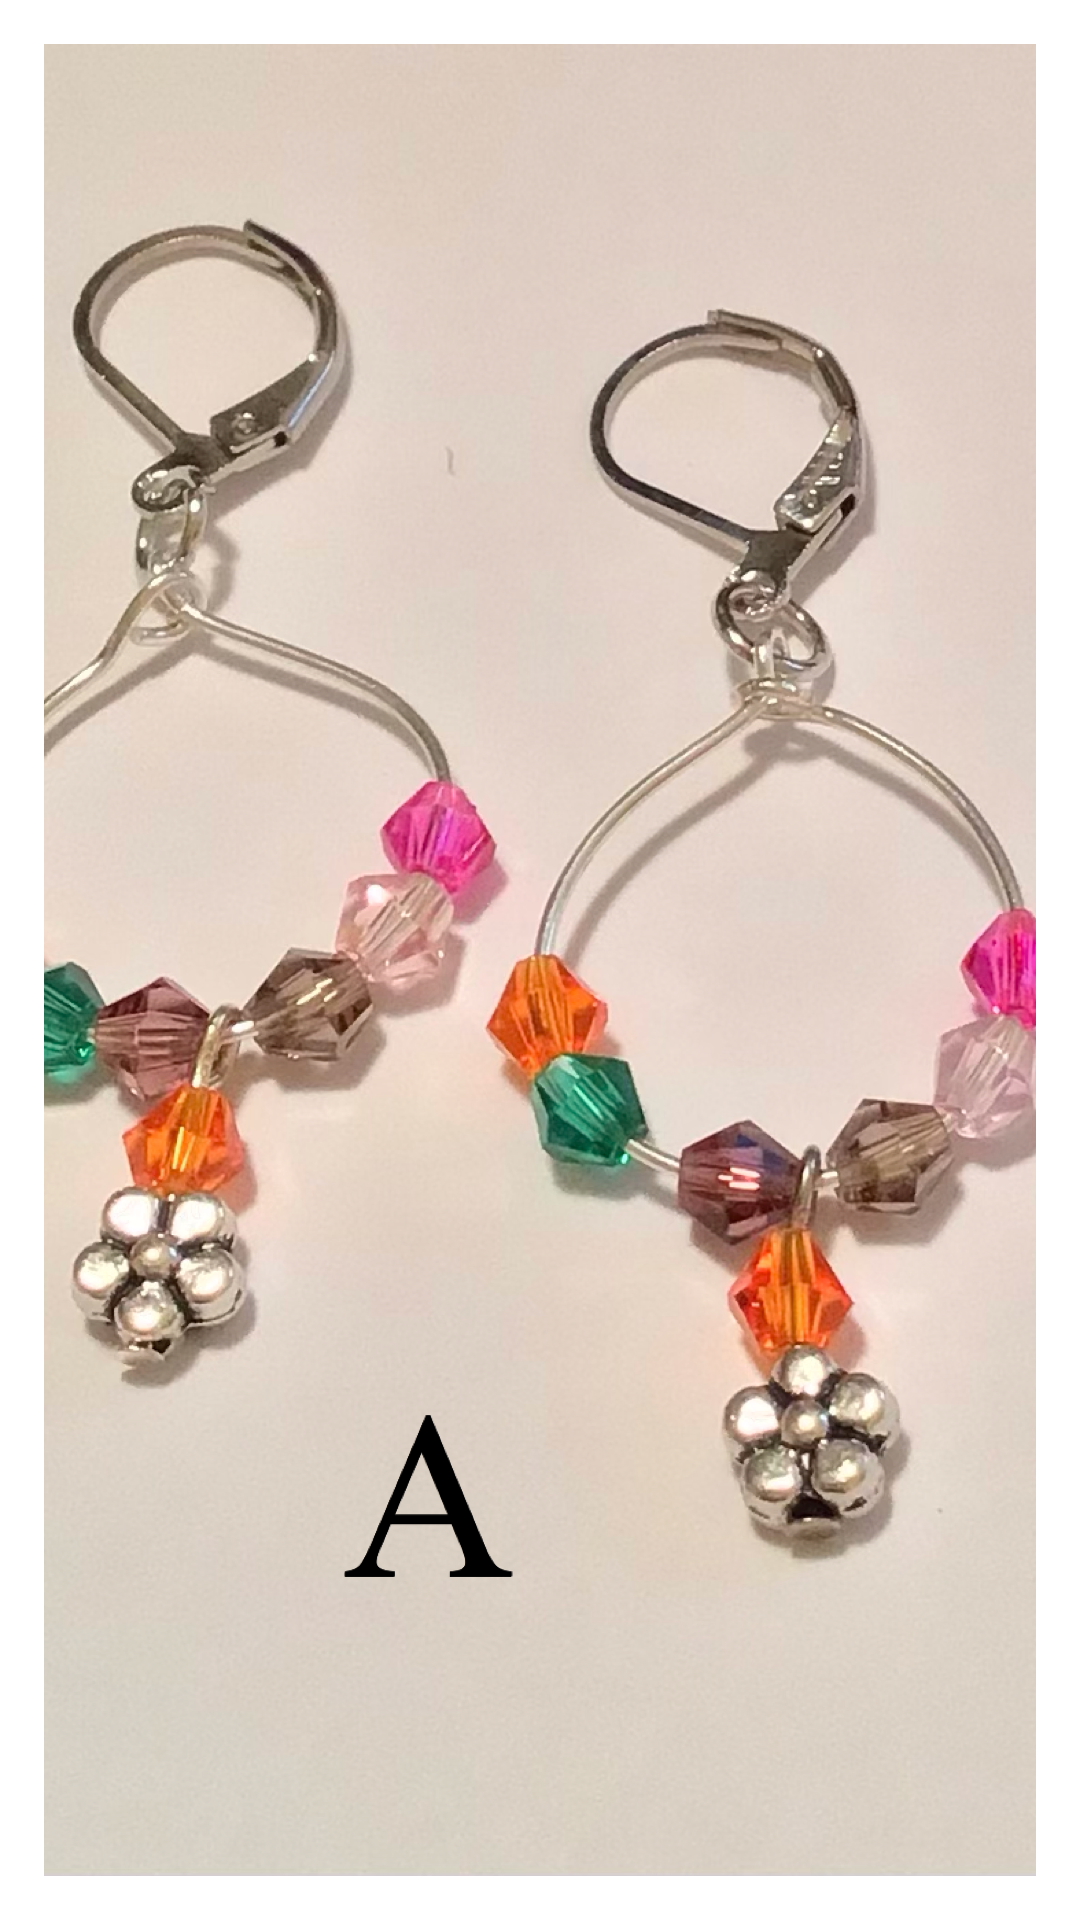 Crystal Hoop Earrings with Flower